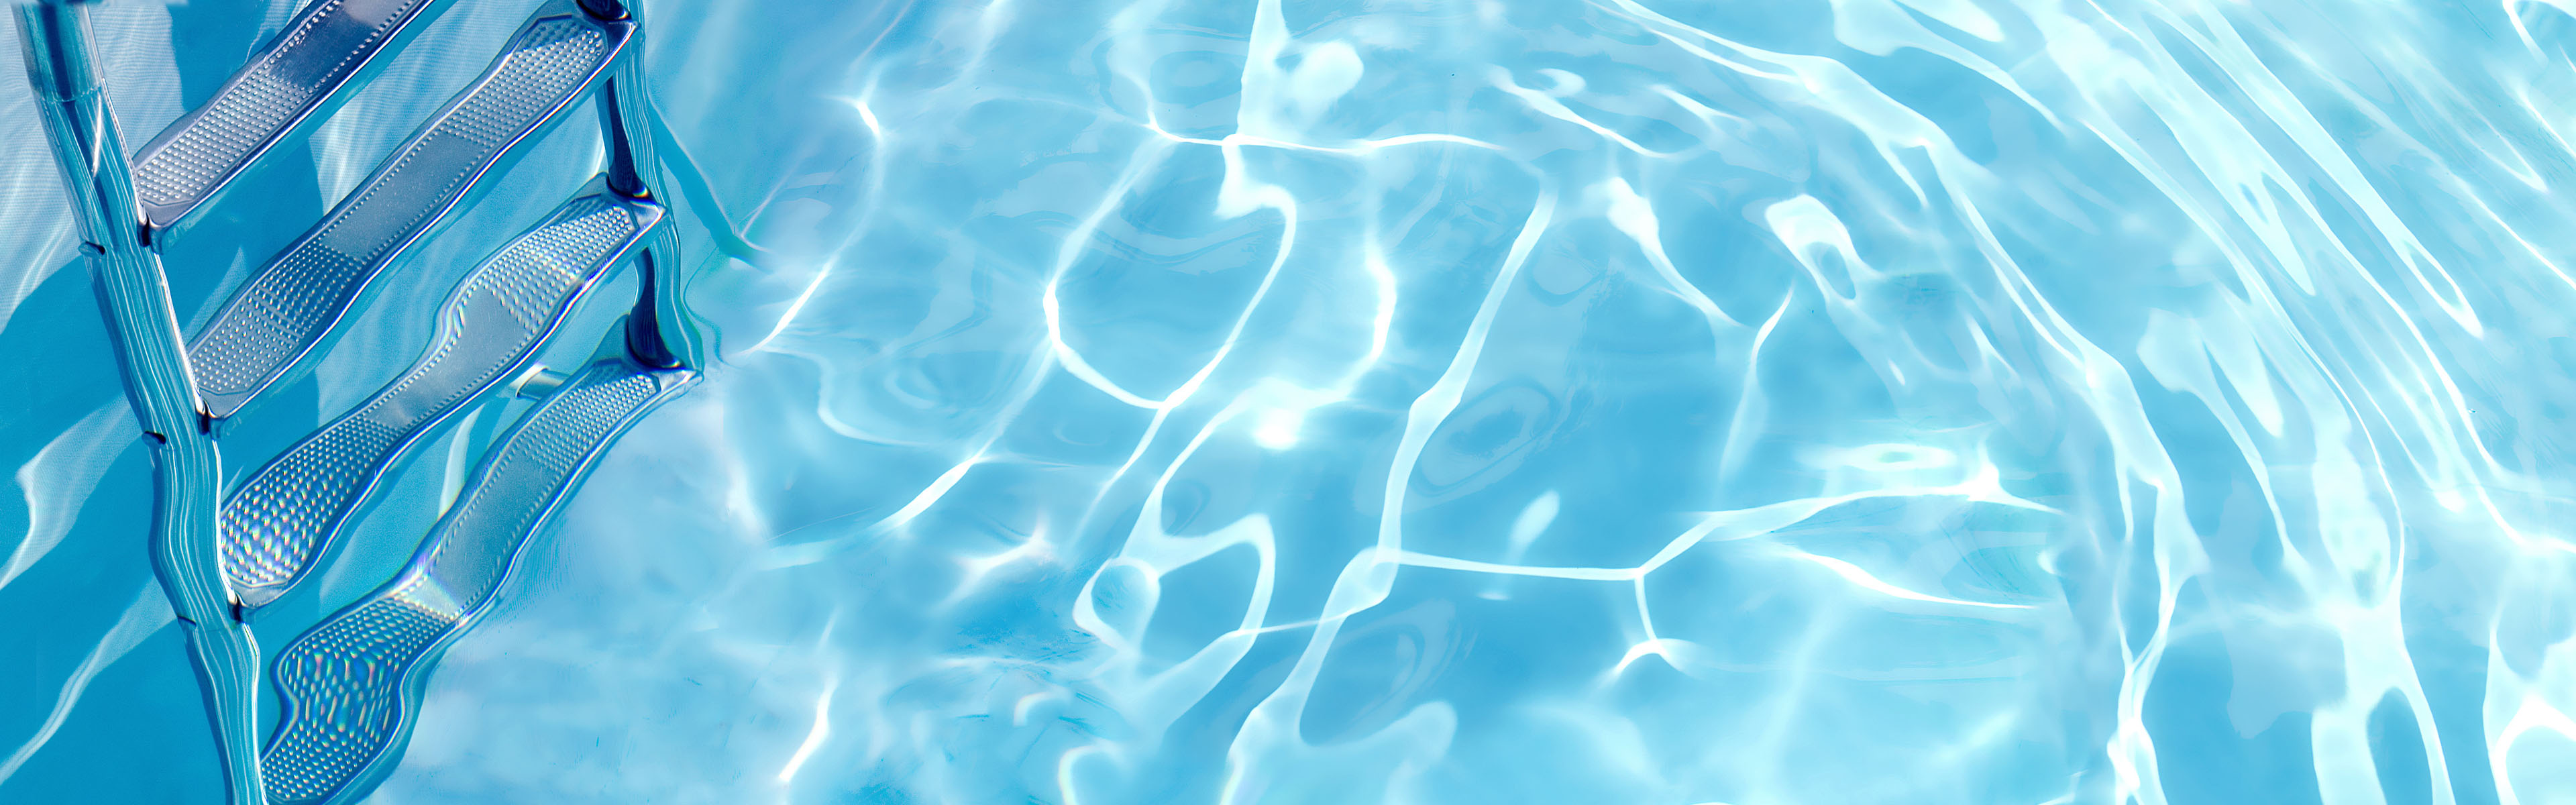 Nahaufnahme eines Schwimmbeckens, reflektierendes Wasser und Beckenleiter unter Wasser